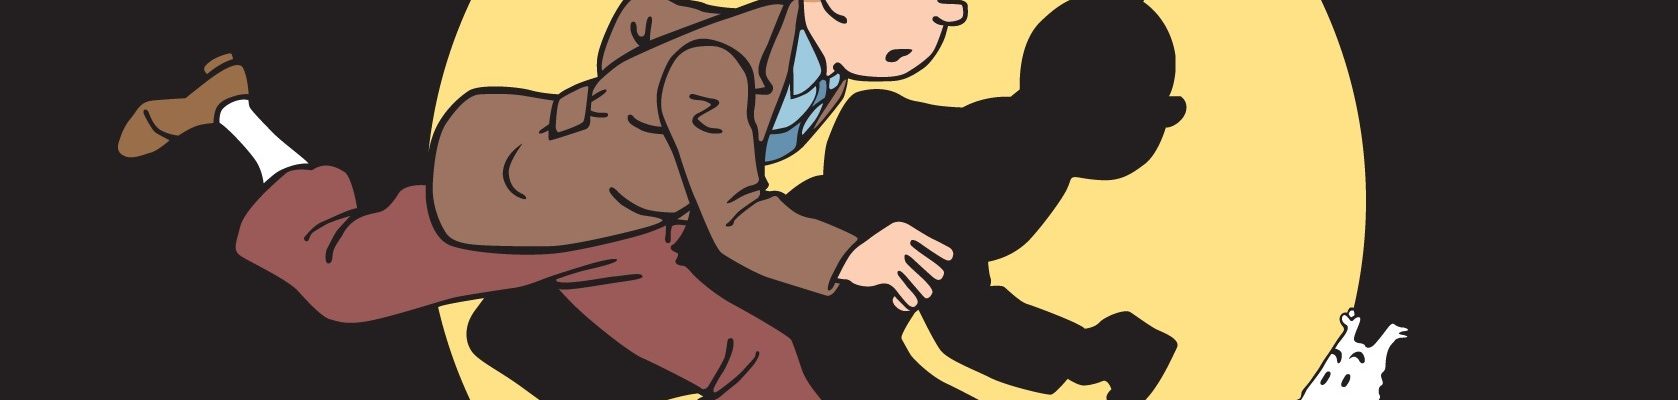 Tintin Athens Comics Library